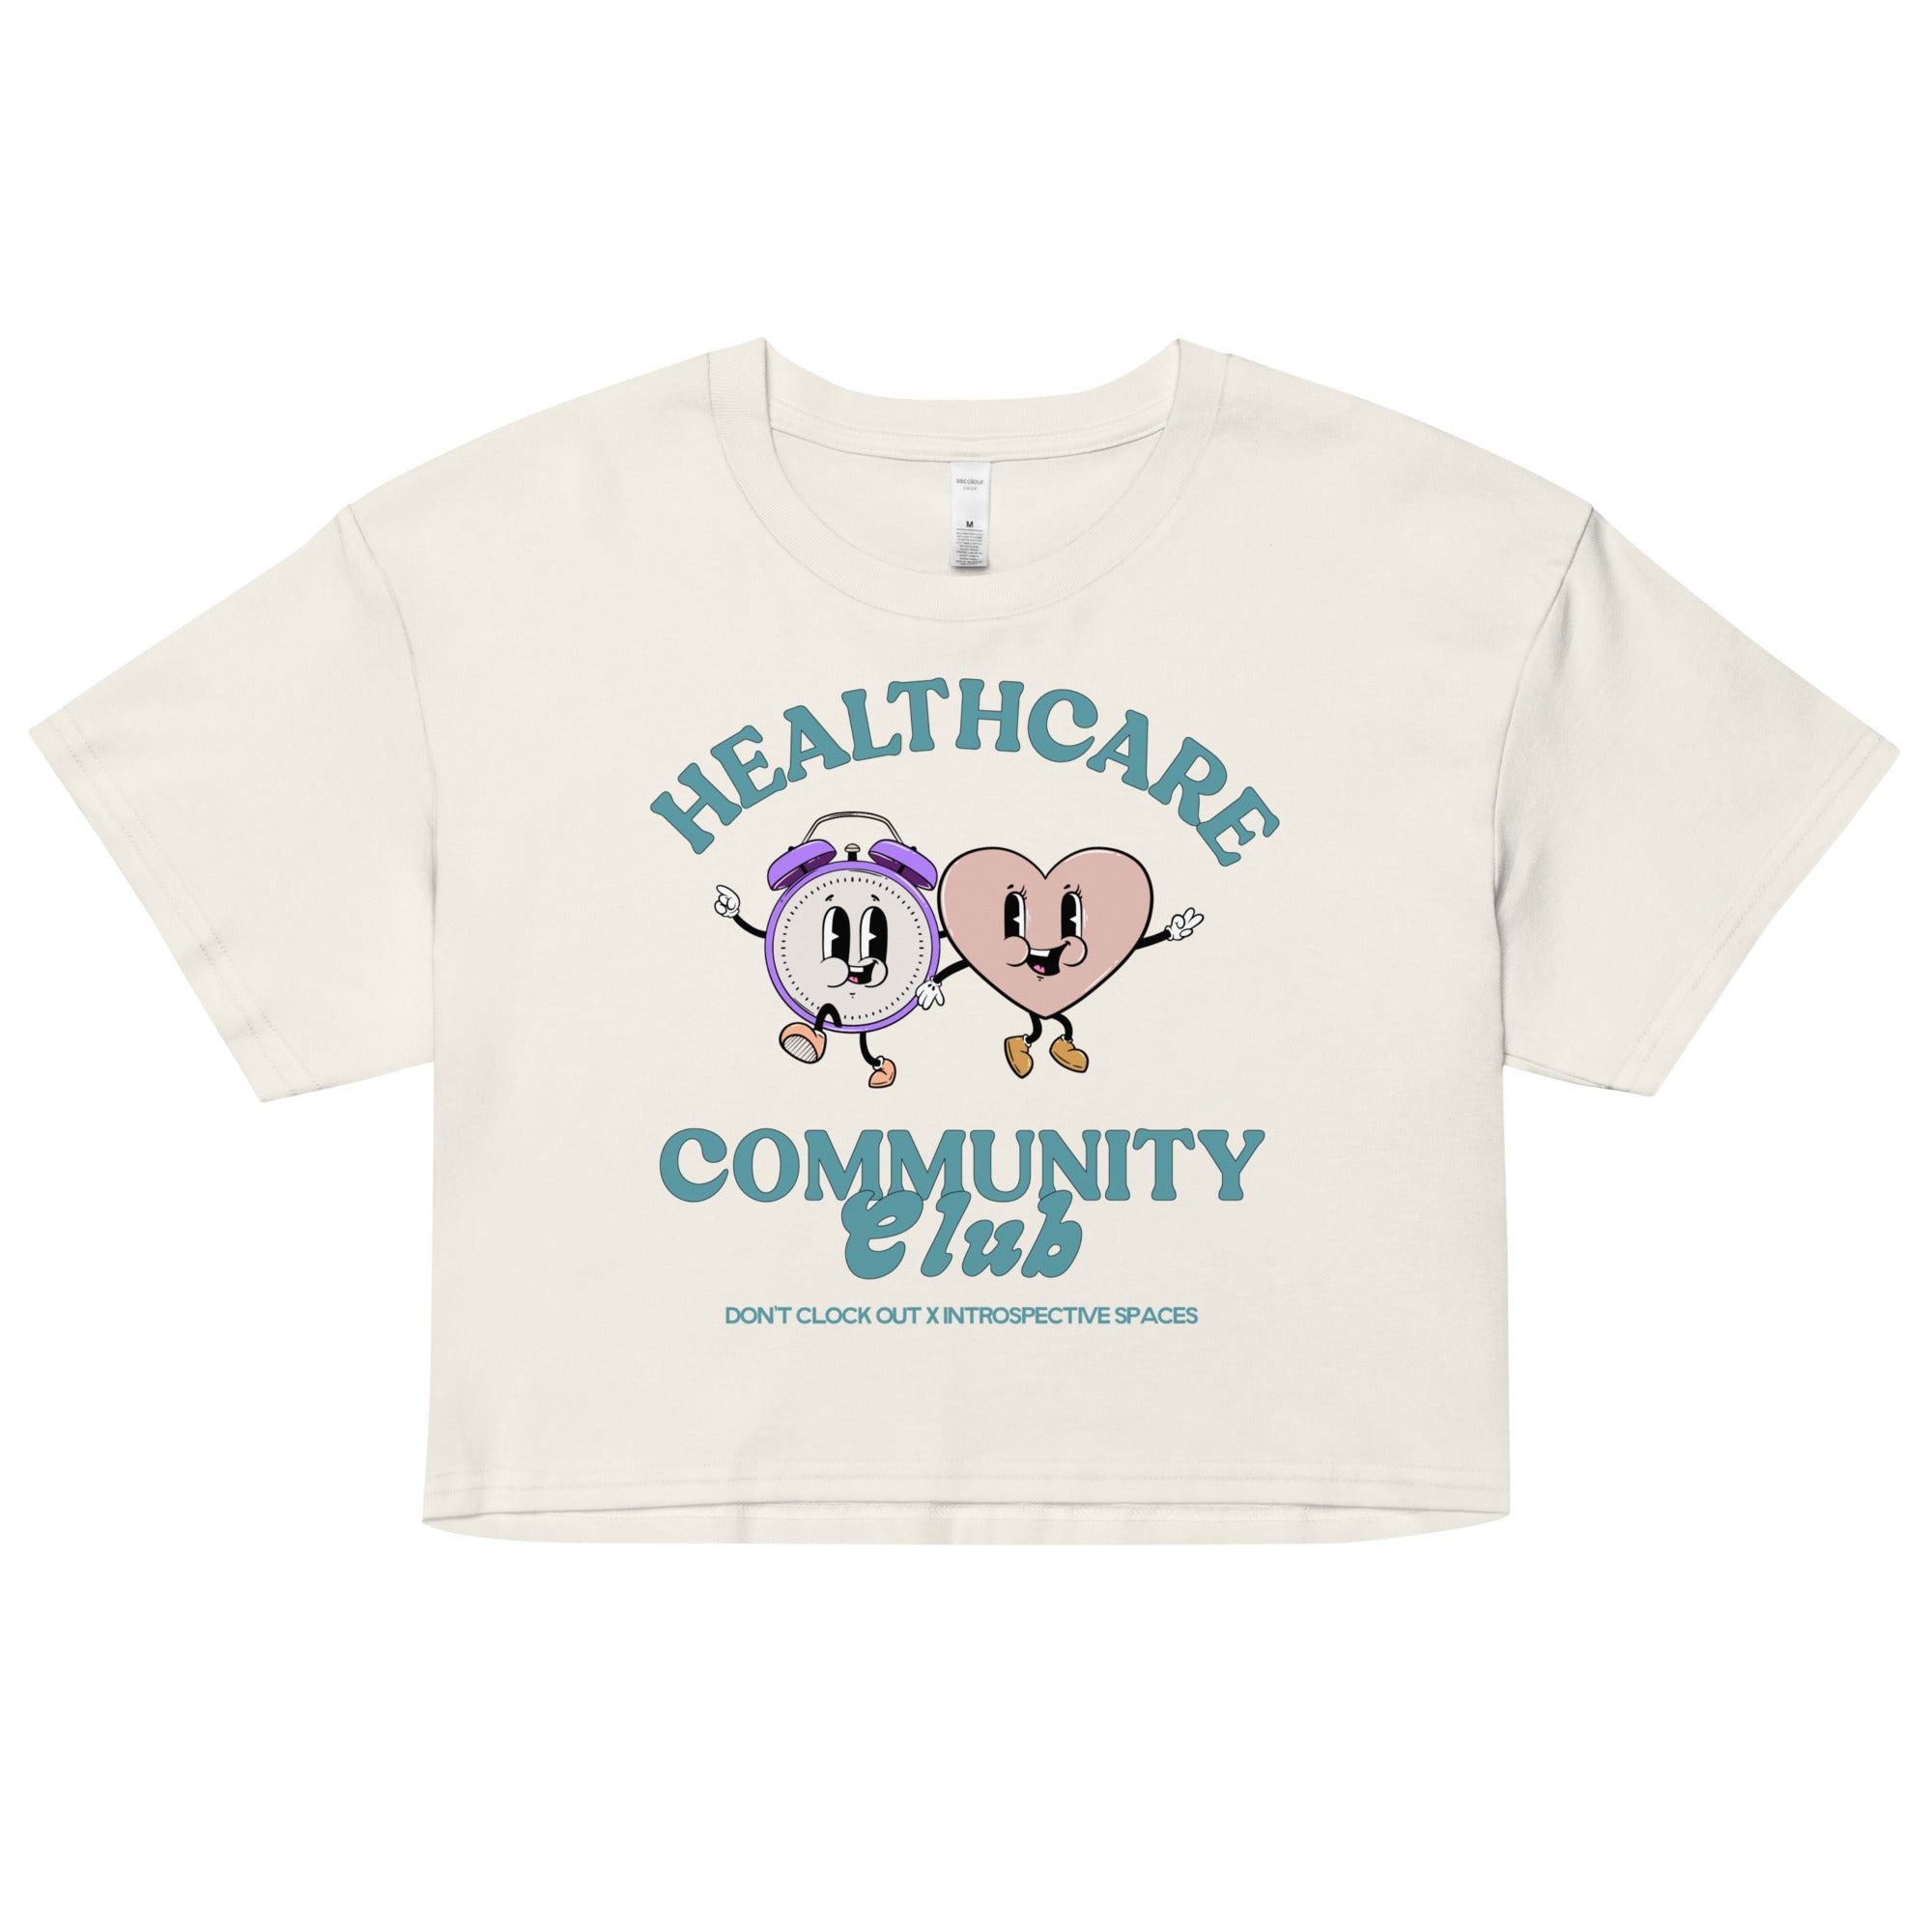 Healthcare Community Club Crop